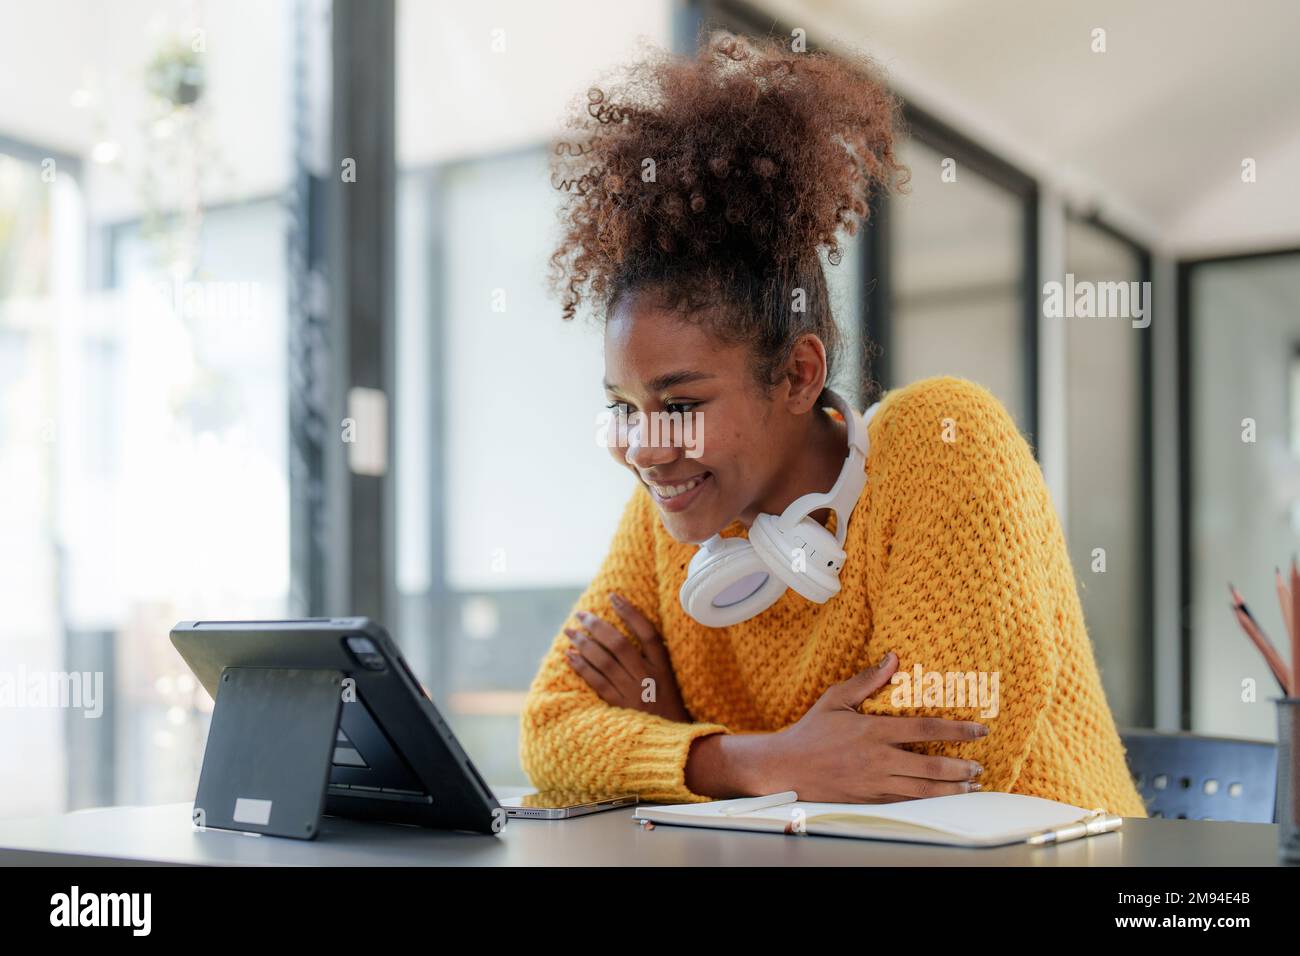 Jeune cheveux bouclés noirs femme africaine américaine utilisant une tablette numérique Banque D'Images